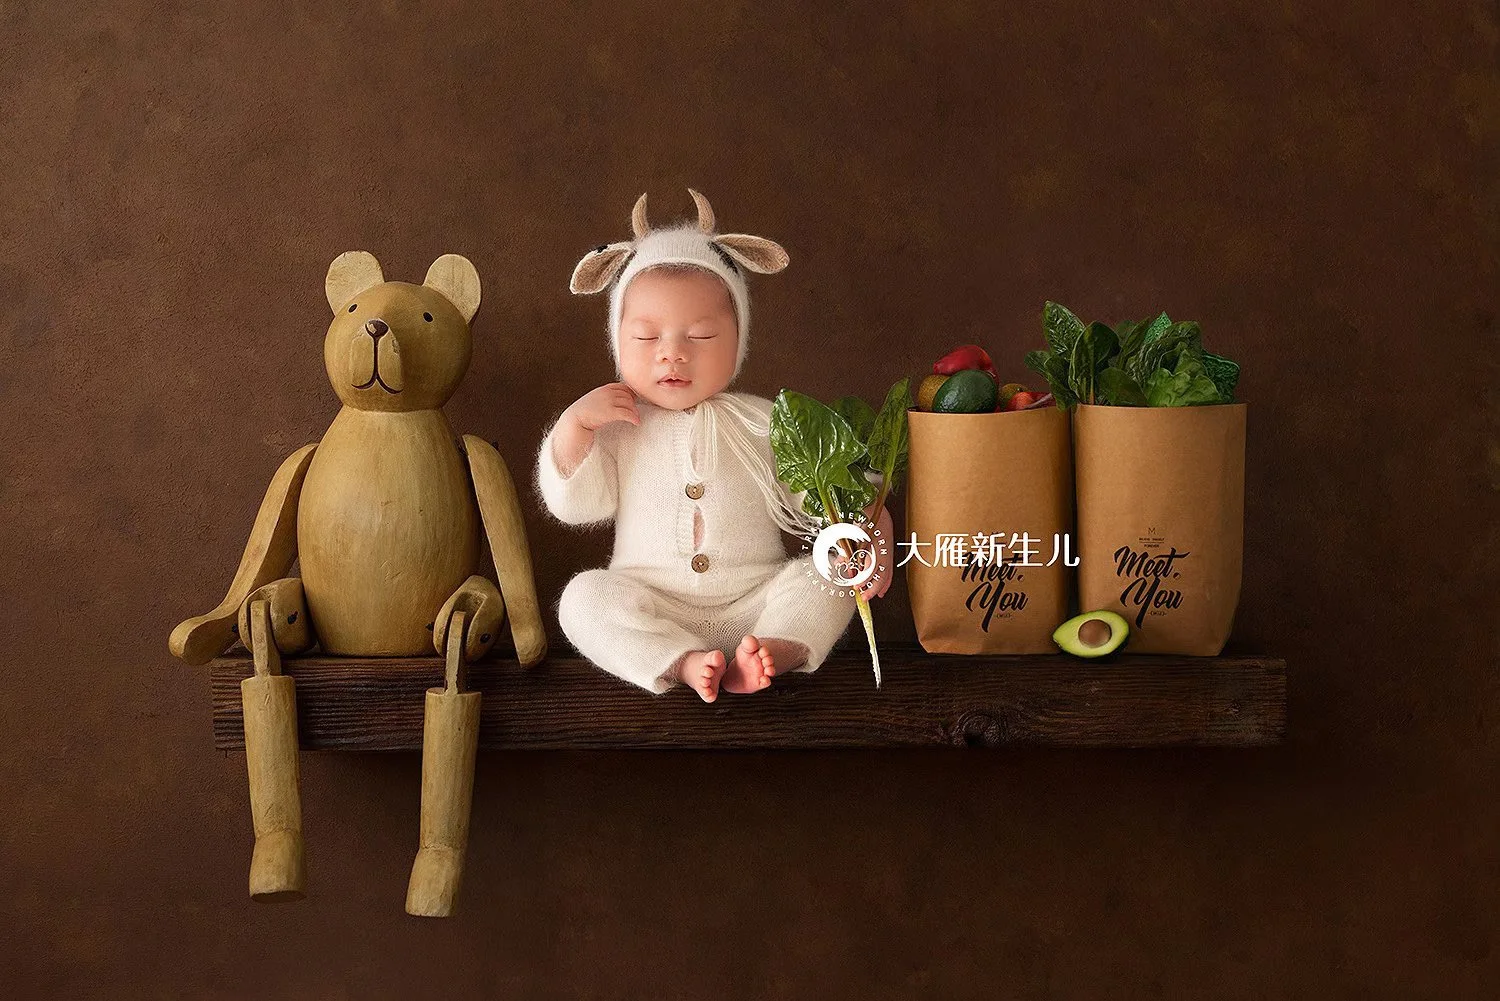 Dvotinst Newborn Baby Fotografija Rekviziti Mehke Volne Pletene 2020 Srčkan Krava Obleke, Igralne Obleke Ušesa Bonnet Klobuk Studio Posname Fotografijo Prop